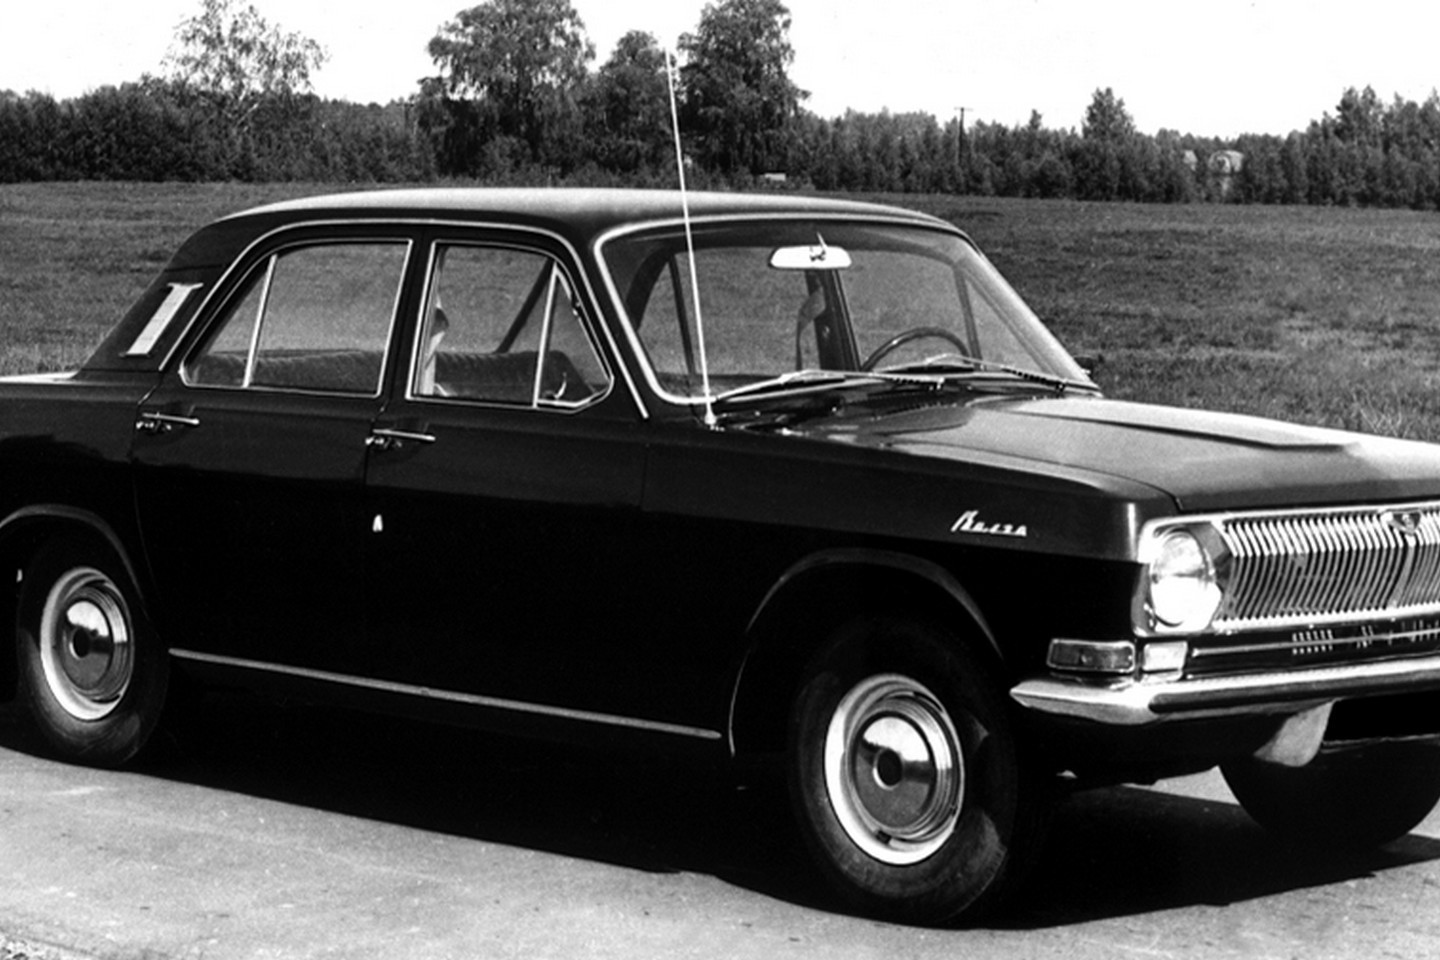 KGB pareigūnams paruoštas automobilis turėjo galingesnį V8 tipo variklį.<br>Gamintojo nuotr.